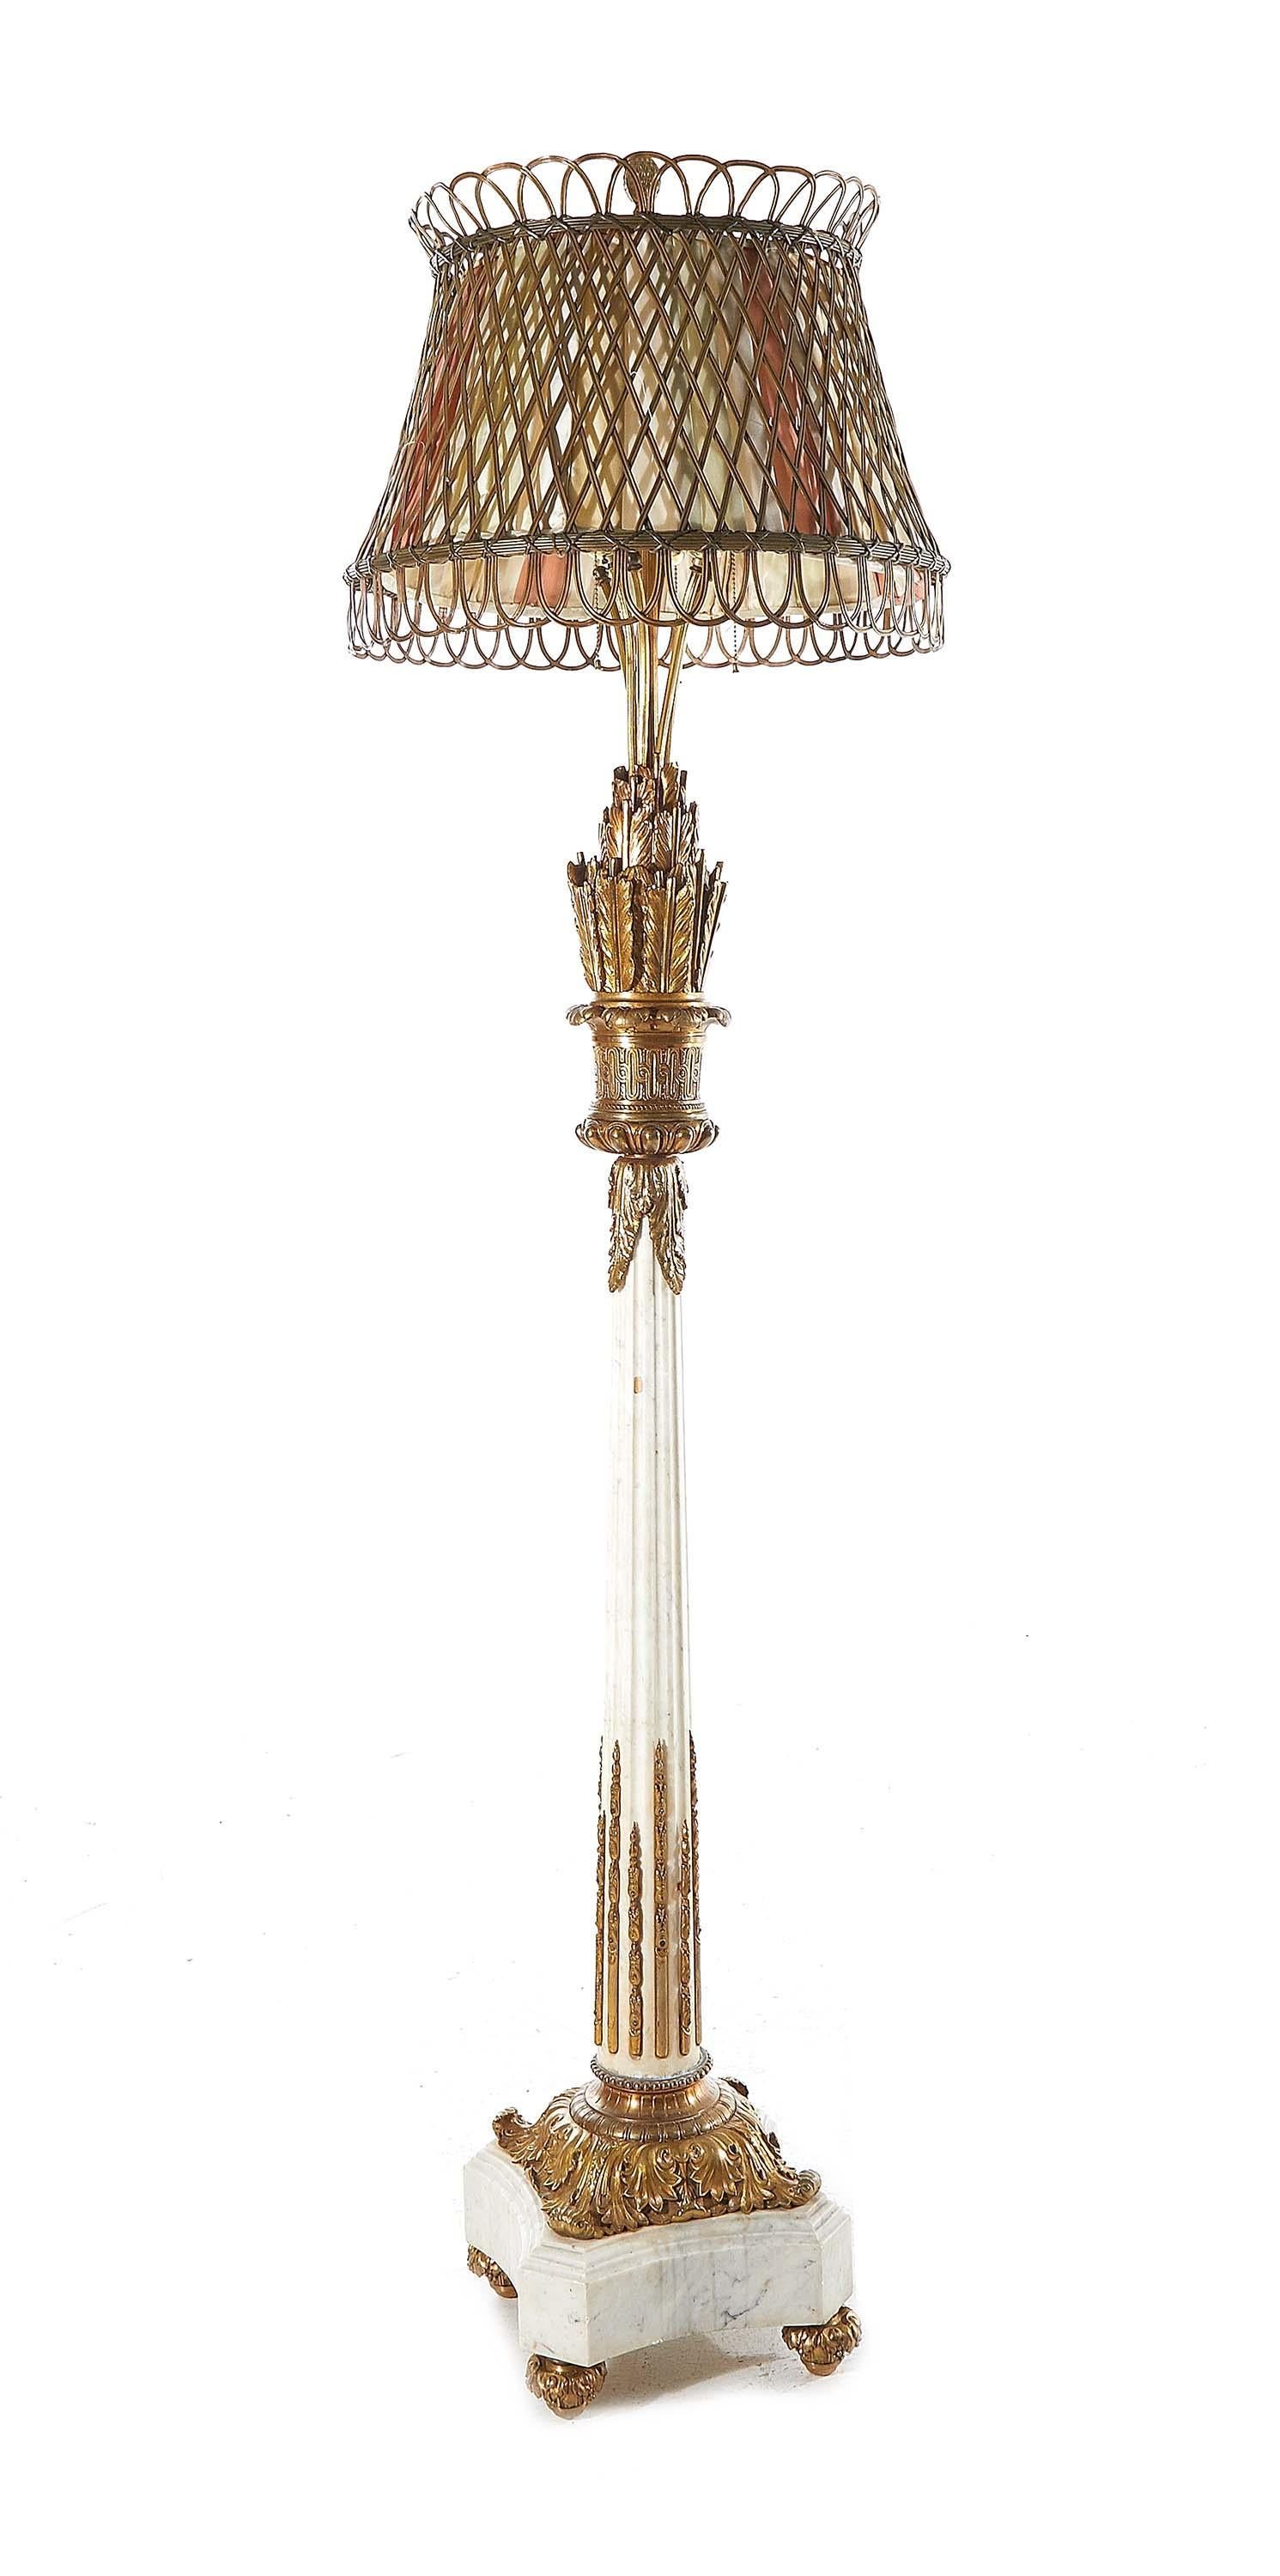 Beeindruckende Stehlampe im Louis XVI-Stil aus vergoldeter Bronze und Marmor, durchbrochener Bronzeschirm mit Stoffbespannung; getragen von einem Schaft mit Federkiel und Pfeil, kannelierter Säule und vierblättrigem Sockel, mit Bronzebeschlägen.